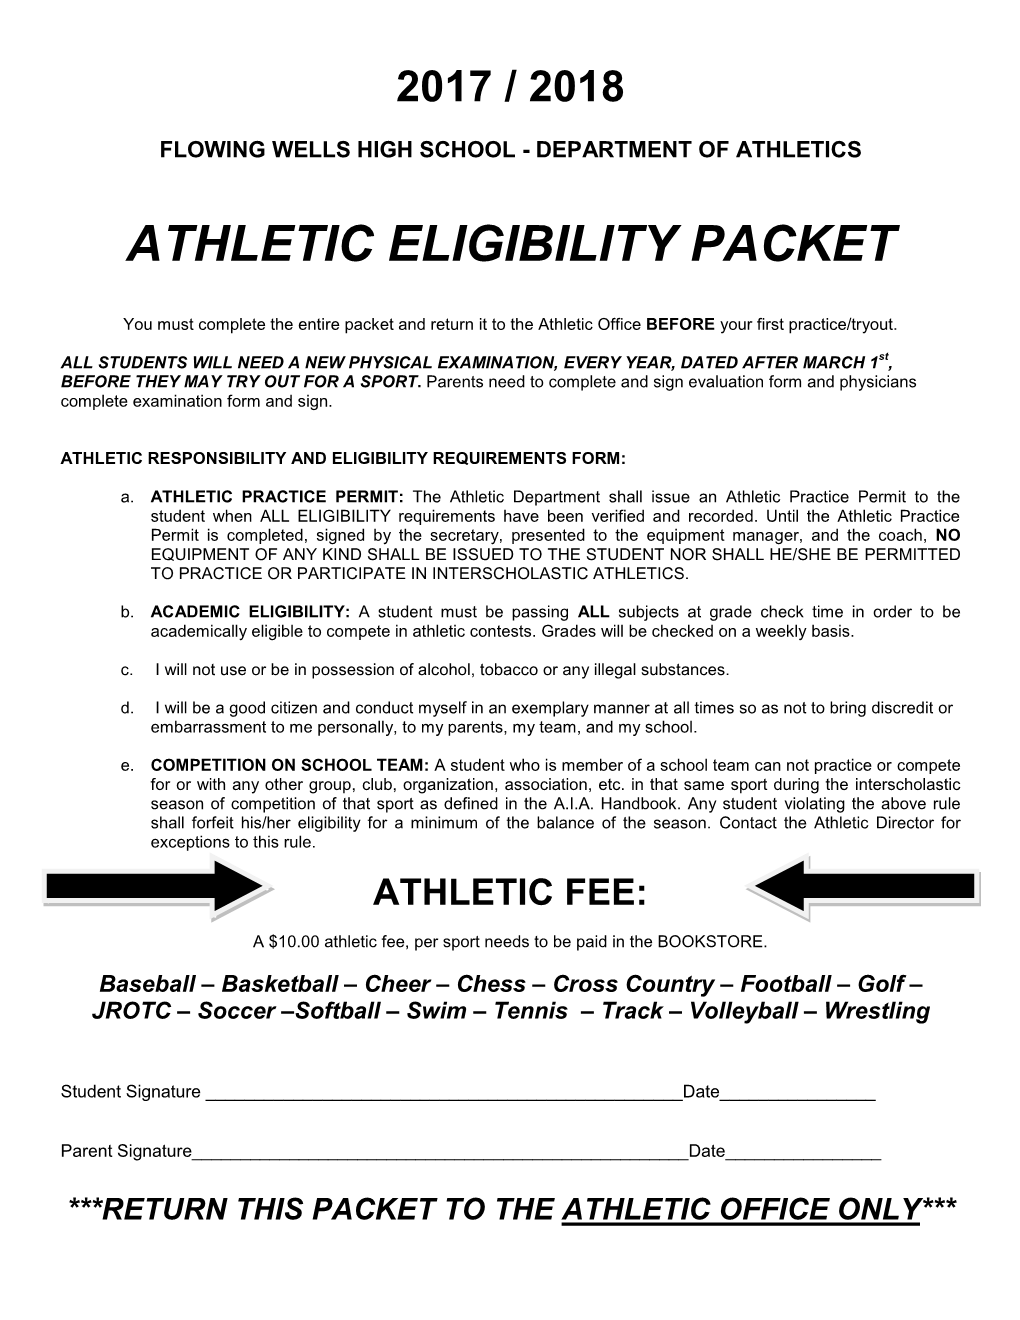 Athletic Eligibility Packet